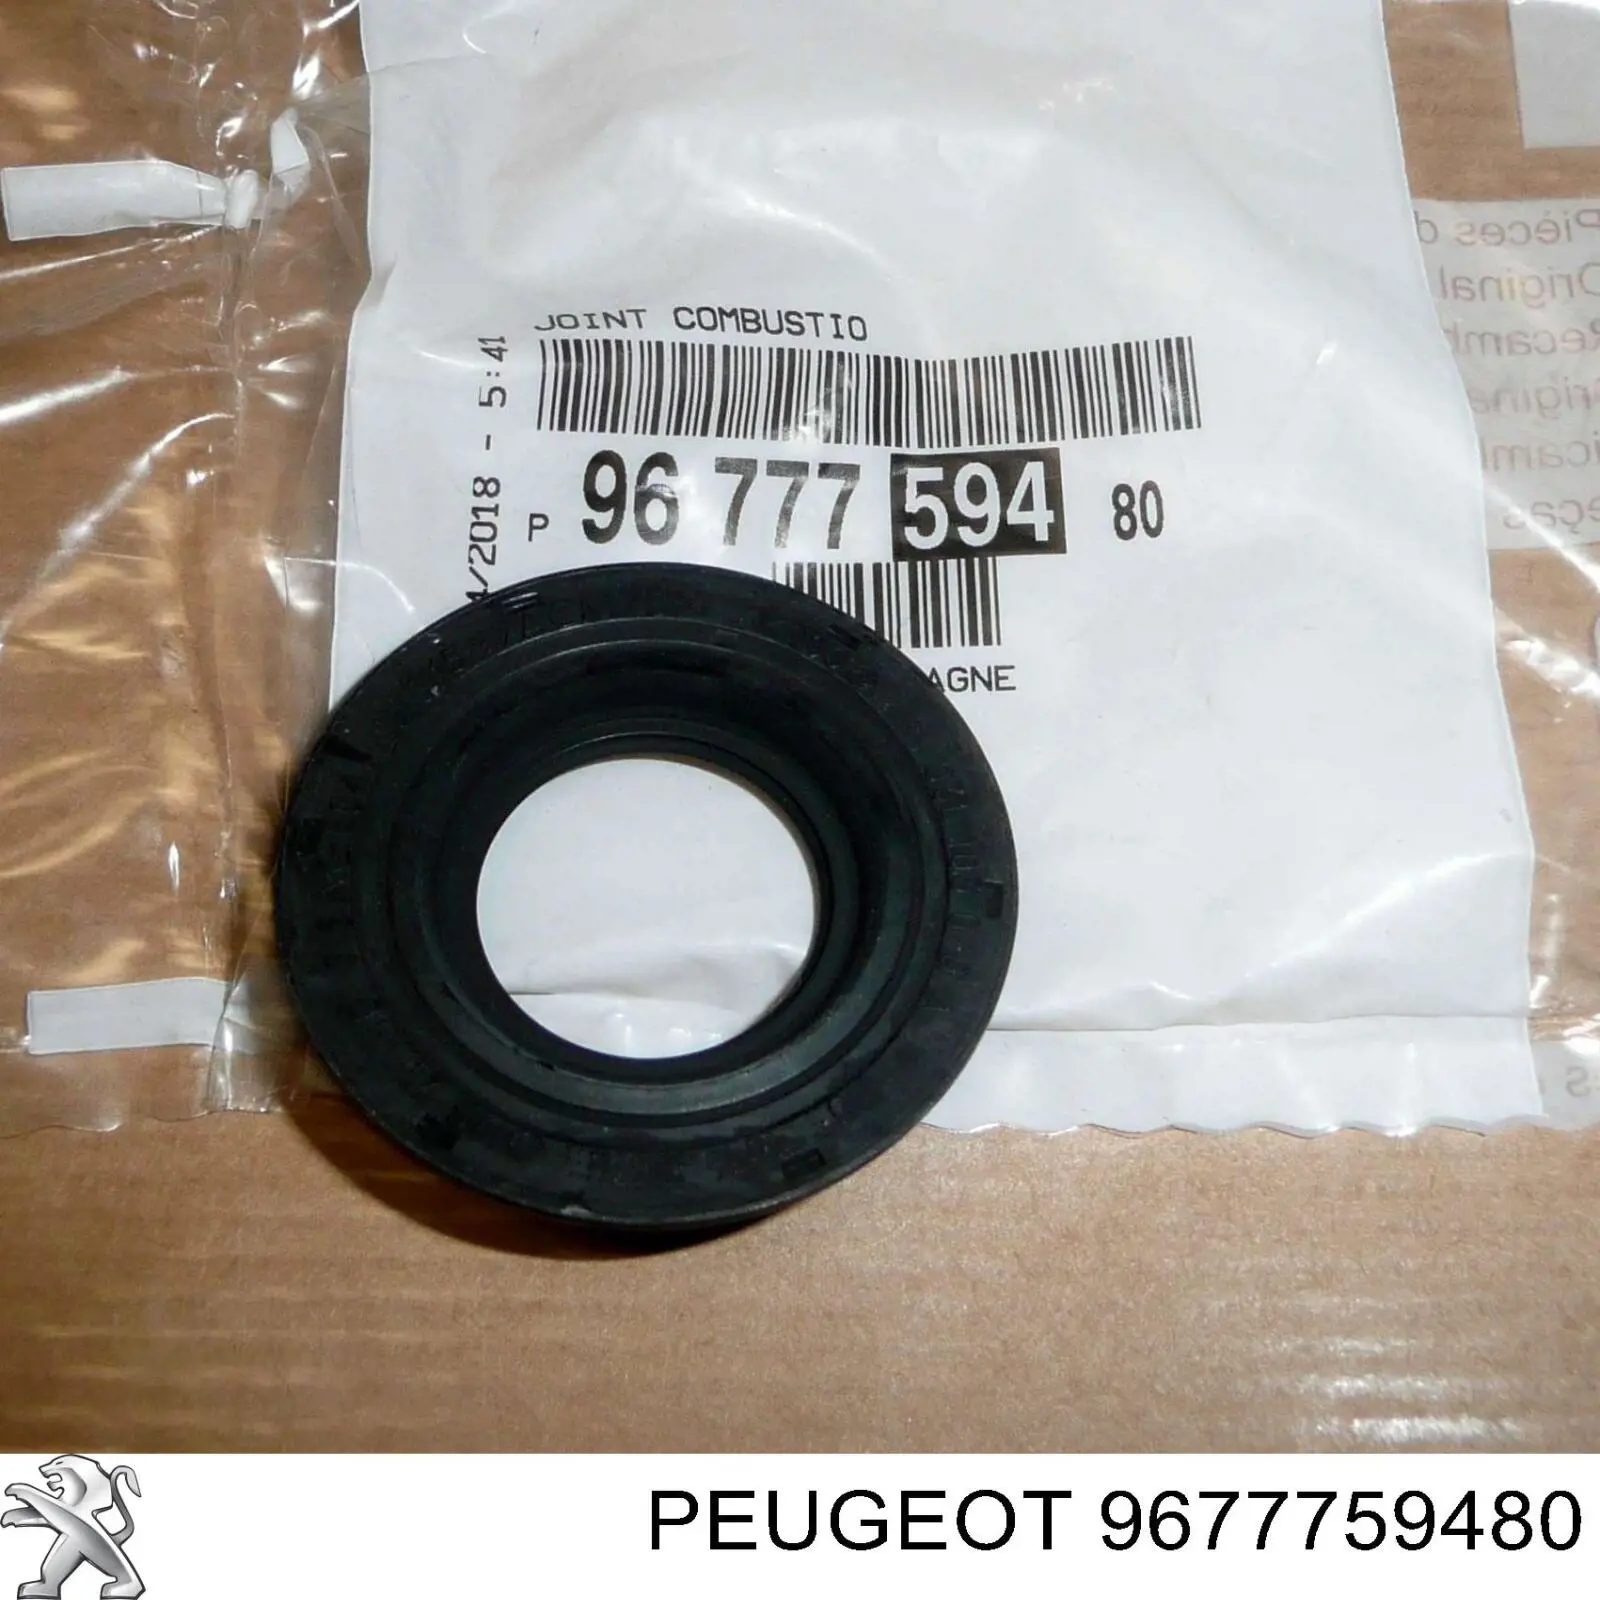 9677759480 Peugeot/Citroen кольцо уплотнительное свечного колодца